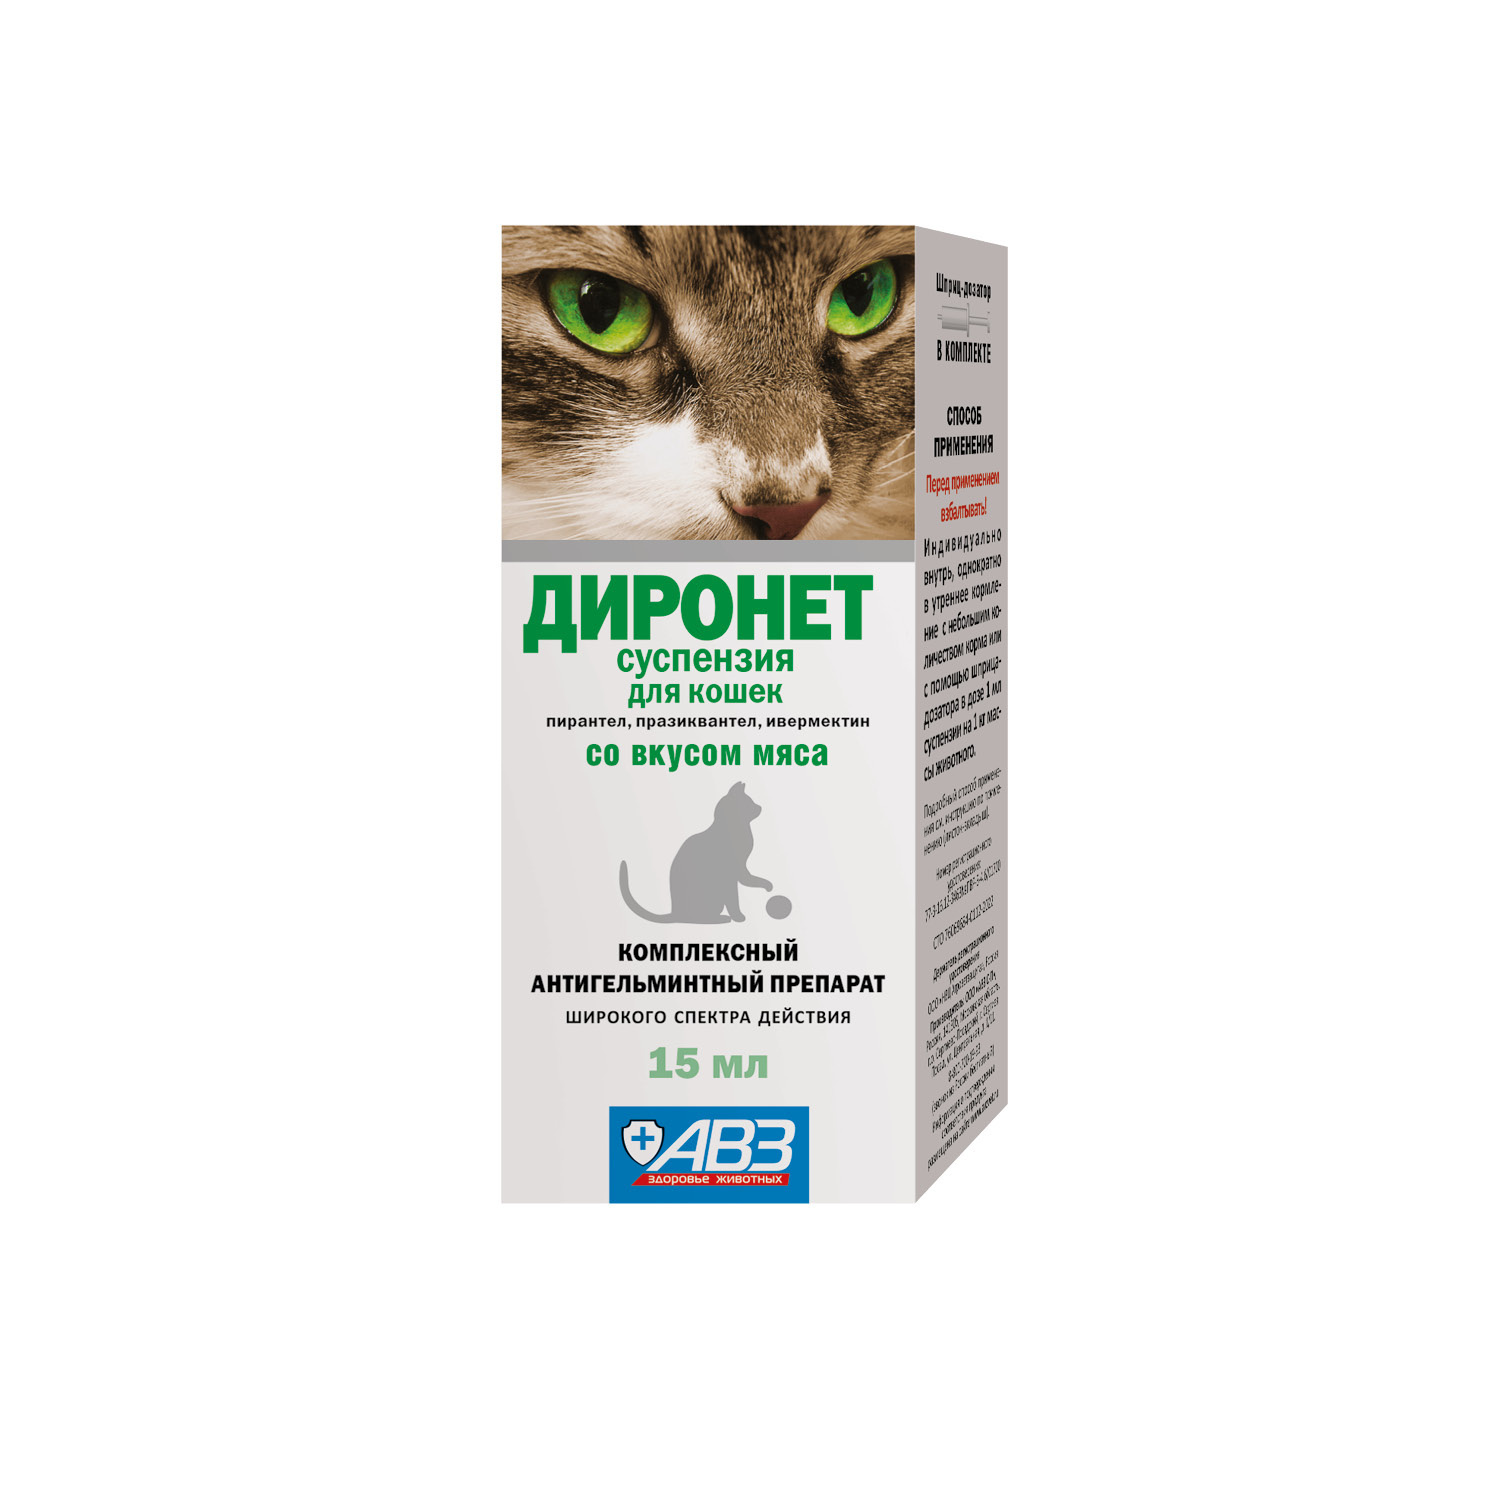 Агроветзащита Агроветзащита диронет суспензия для кошек (15 мл) агроветзащита диронет 200 таблетки для кошек и котят 2 таб